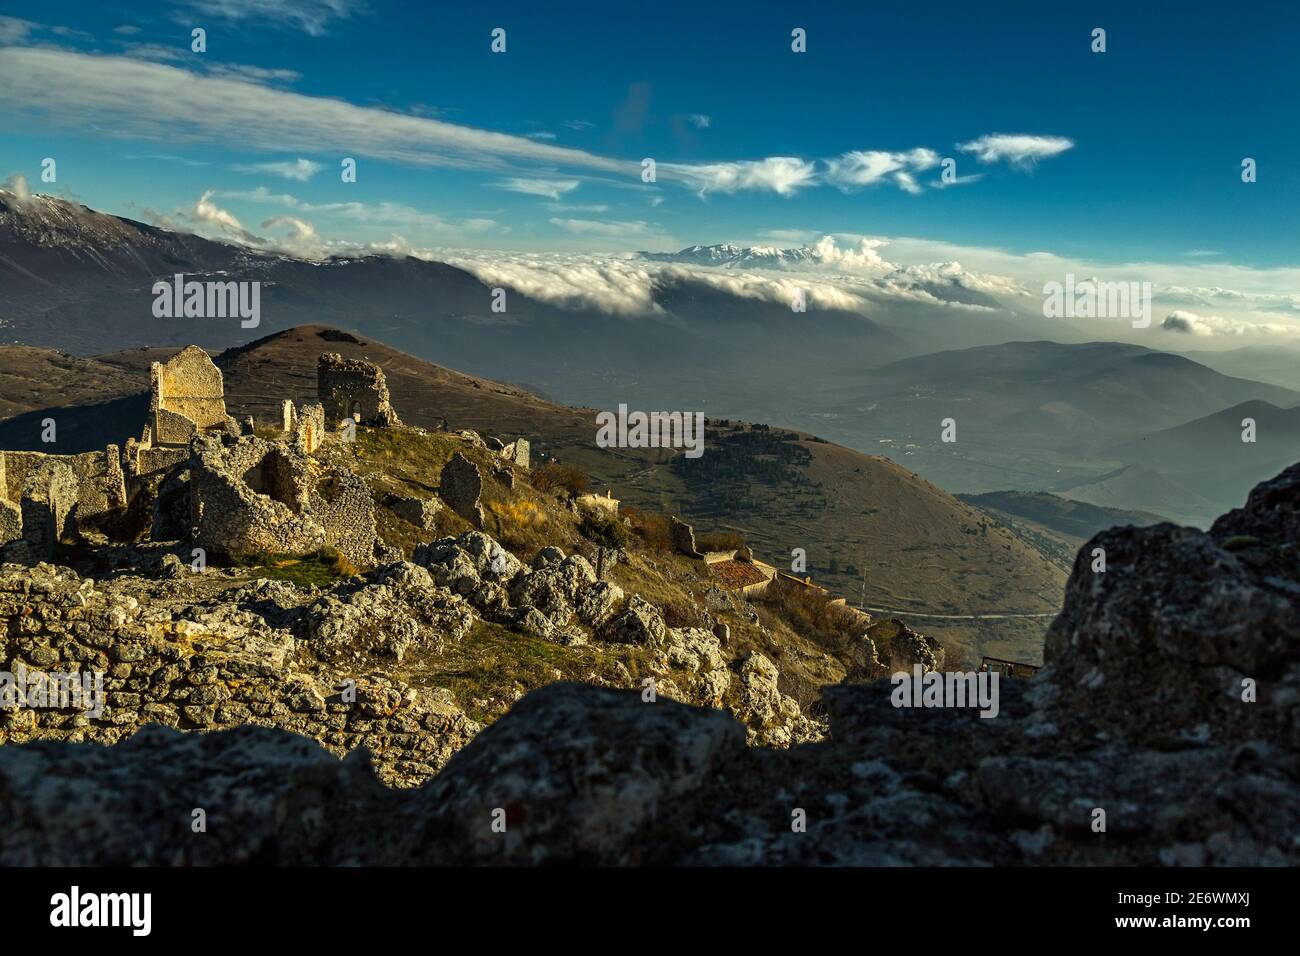 Les sommets enneigés de la chaîne de montagnes Maiella vus des ruines de l'ancien village de Rocca Calascio.Abruzzes, Italie Banque D'Images